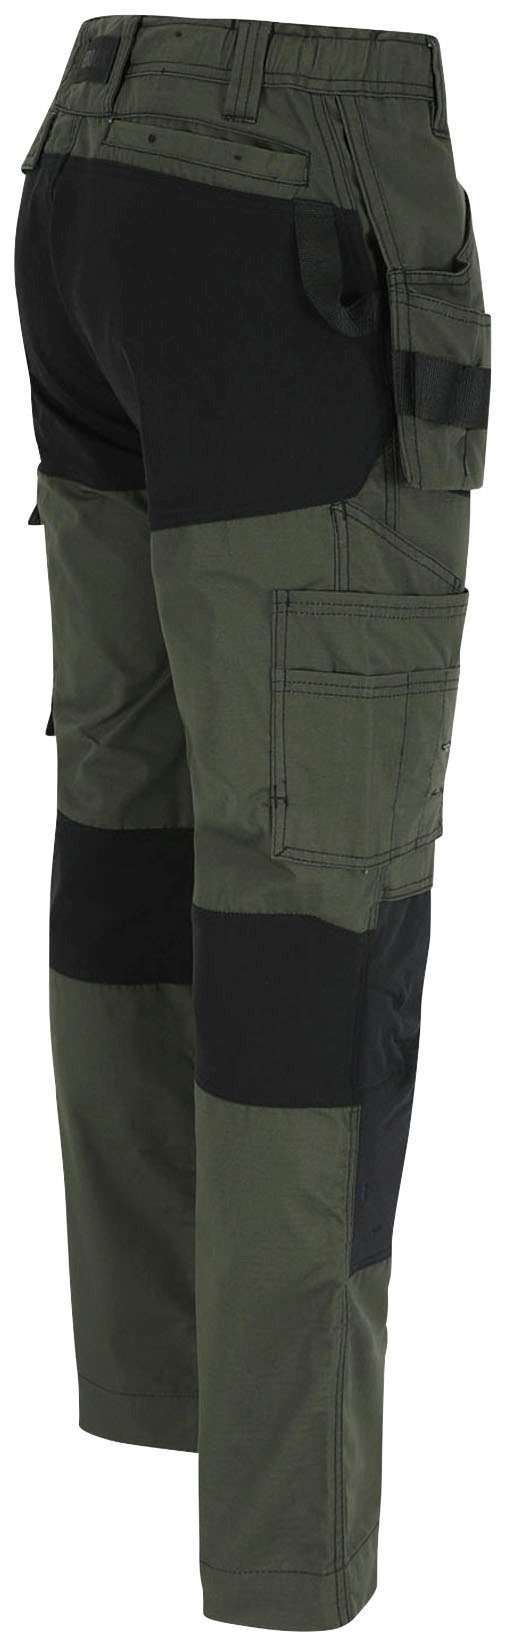 Herock Arbeitshose Spector Hose Multi-Pocket-Hose khaki 2 mit festen 4-Wege-Stretch-Teilen Nageltaschen und